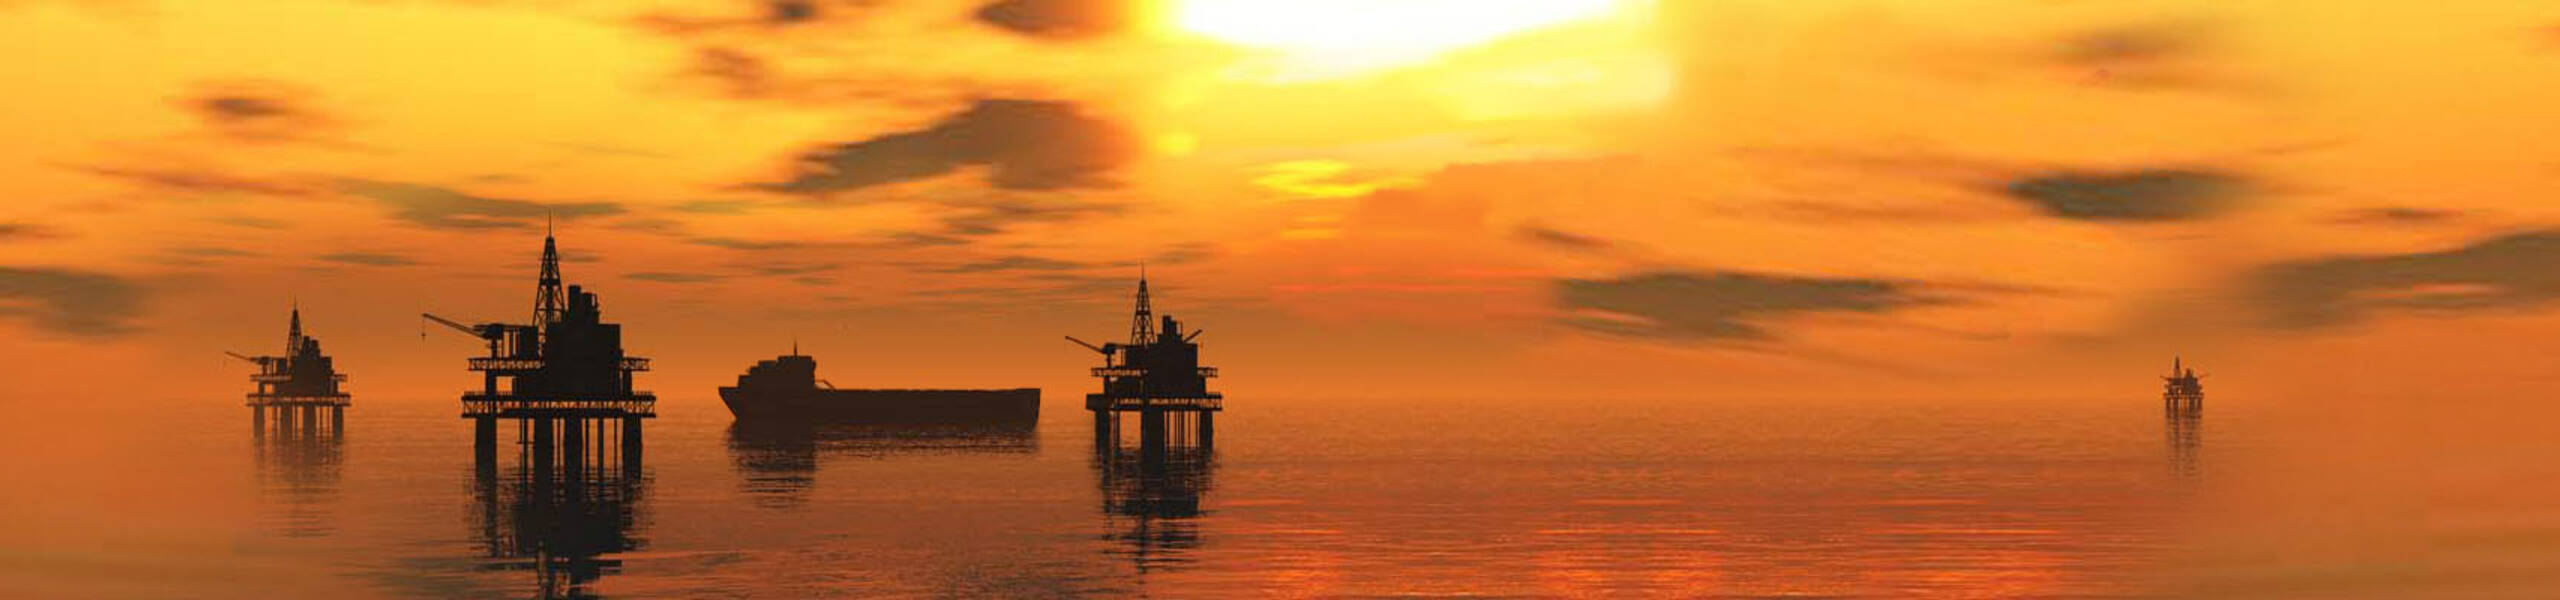 EIA: estoques de petróleo dos EUA em 7,4 milhões de barris